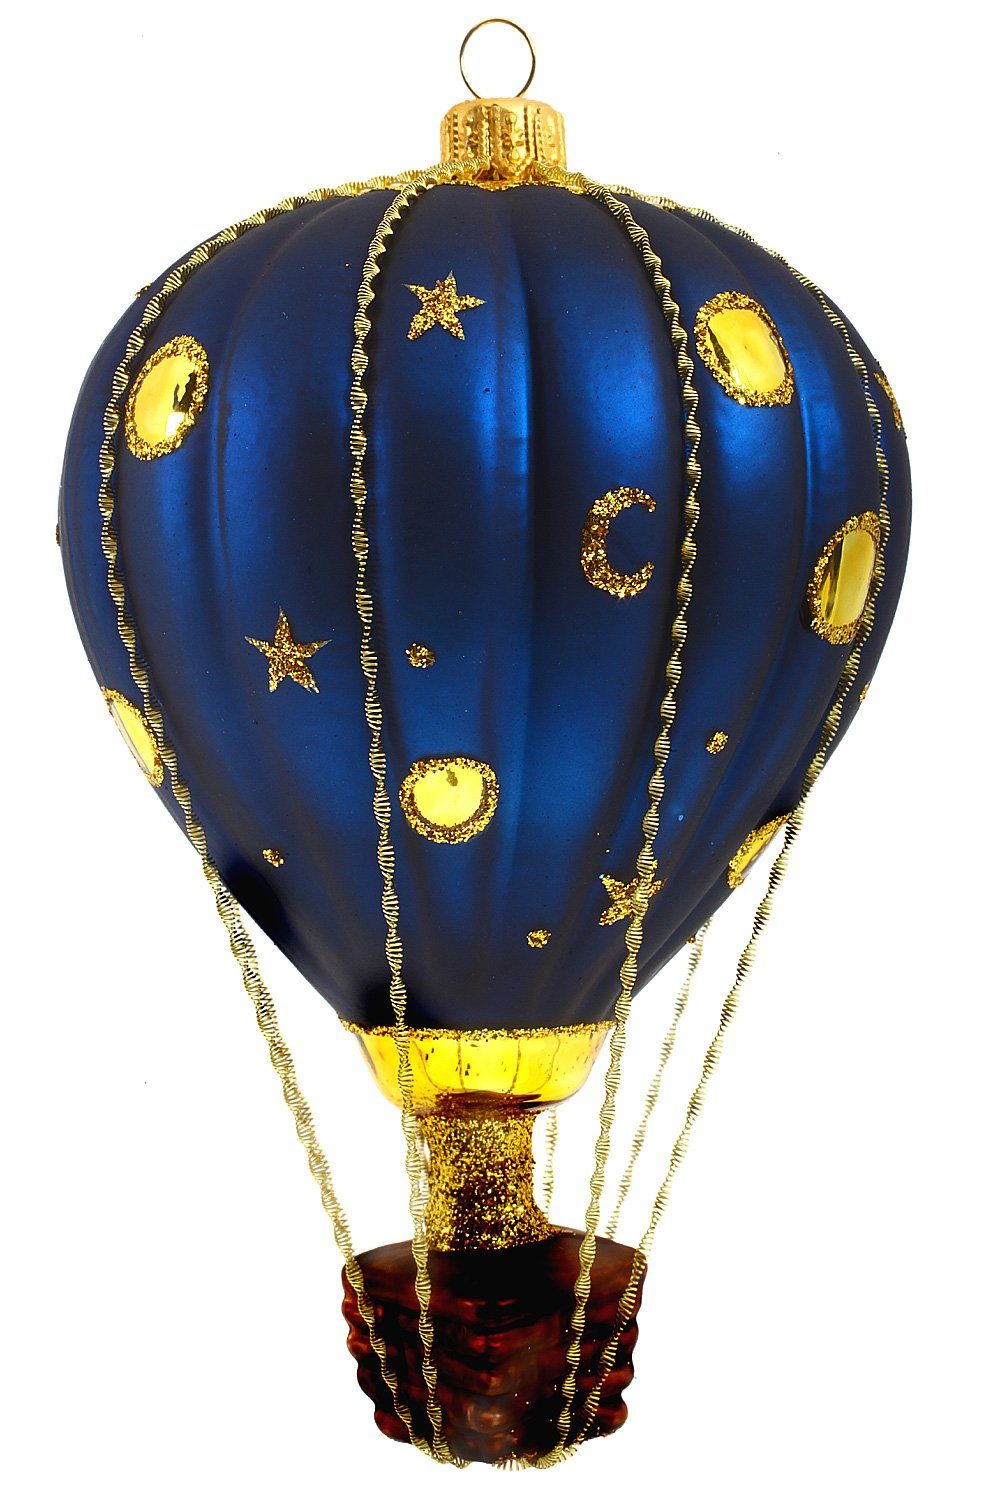 handdekoriert Dekohänger Christbaumschmuck - Weihnachtskontor mundgeblasen Heißluftballon Hamburger Mondschein, -